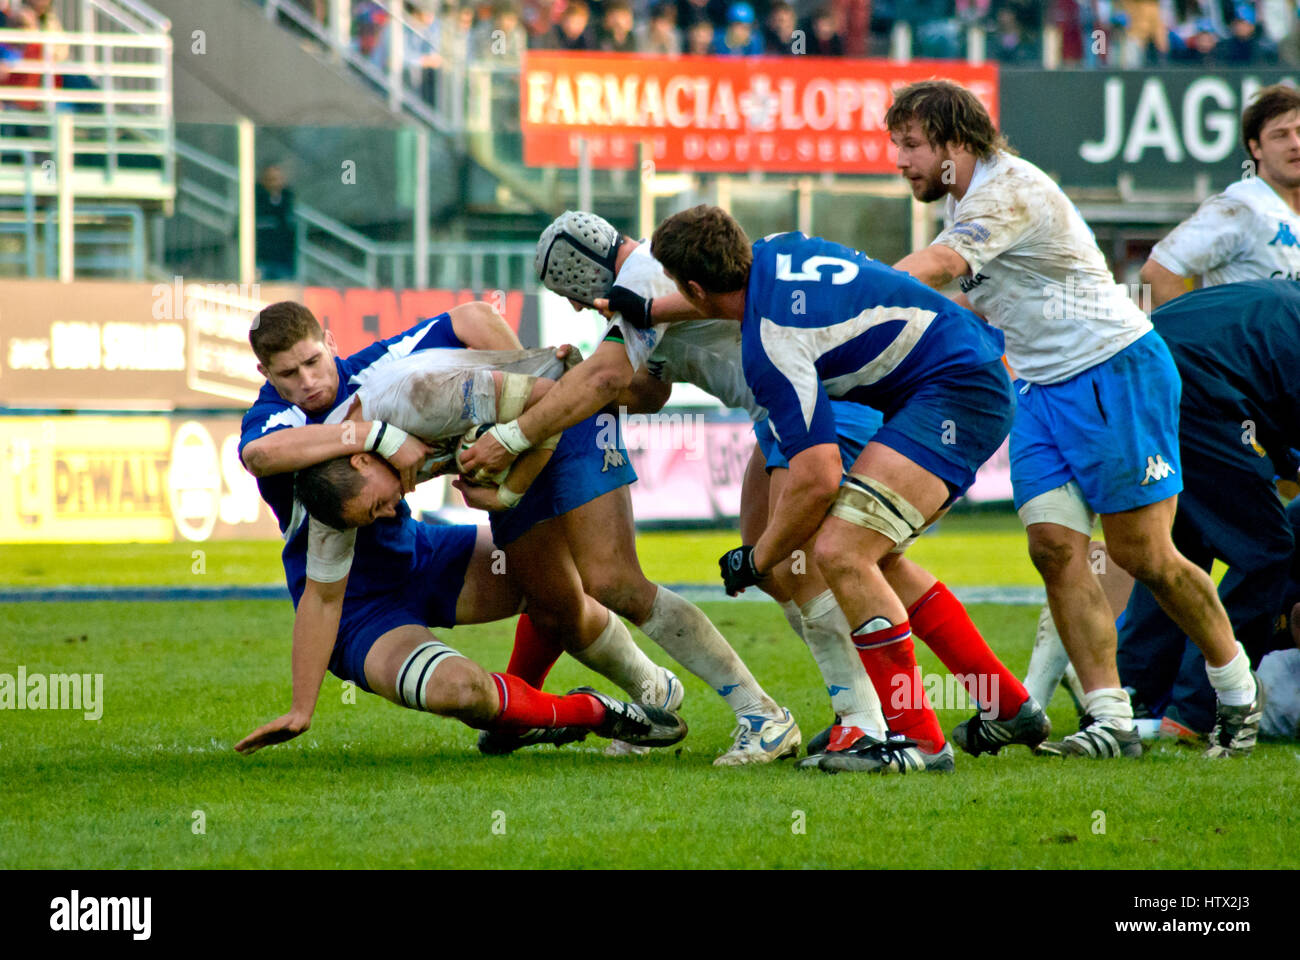 Six Nations Rugby Spiel Italien Aganinst Frankreich. Spieler in Scrum Aktion auf grünen Spielplatz Stockfoto